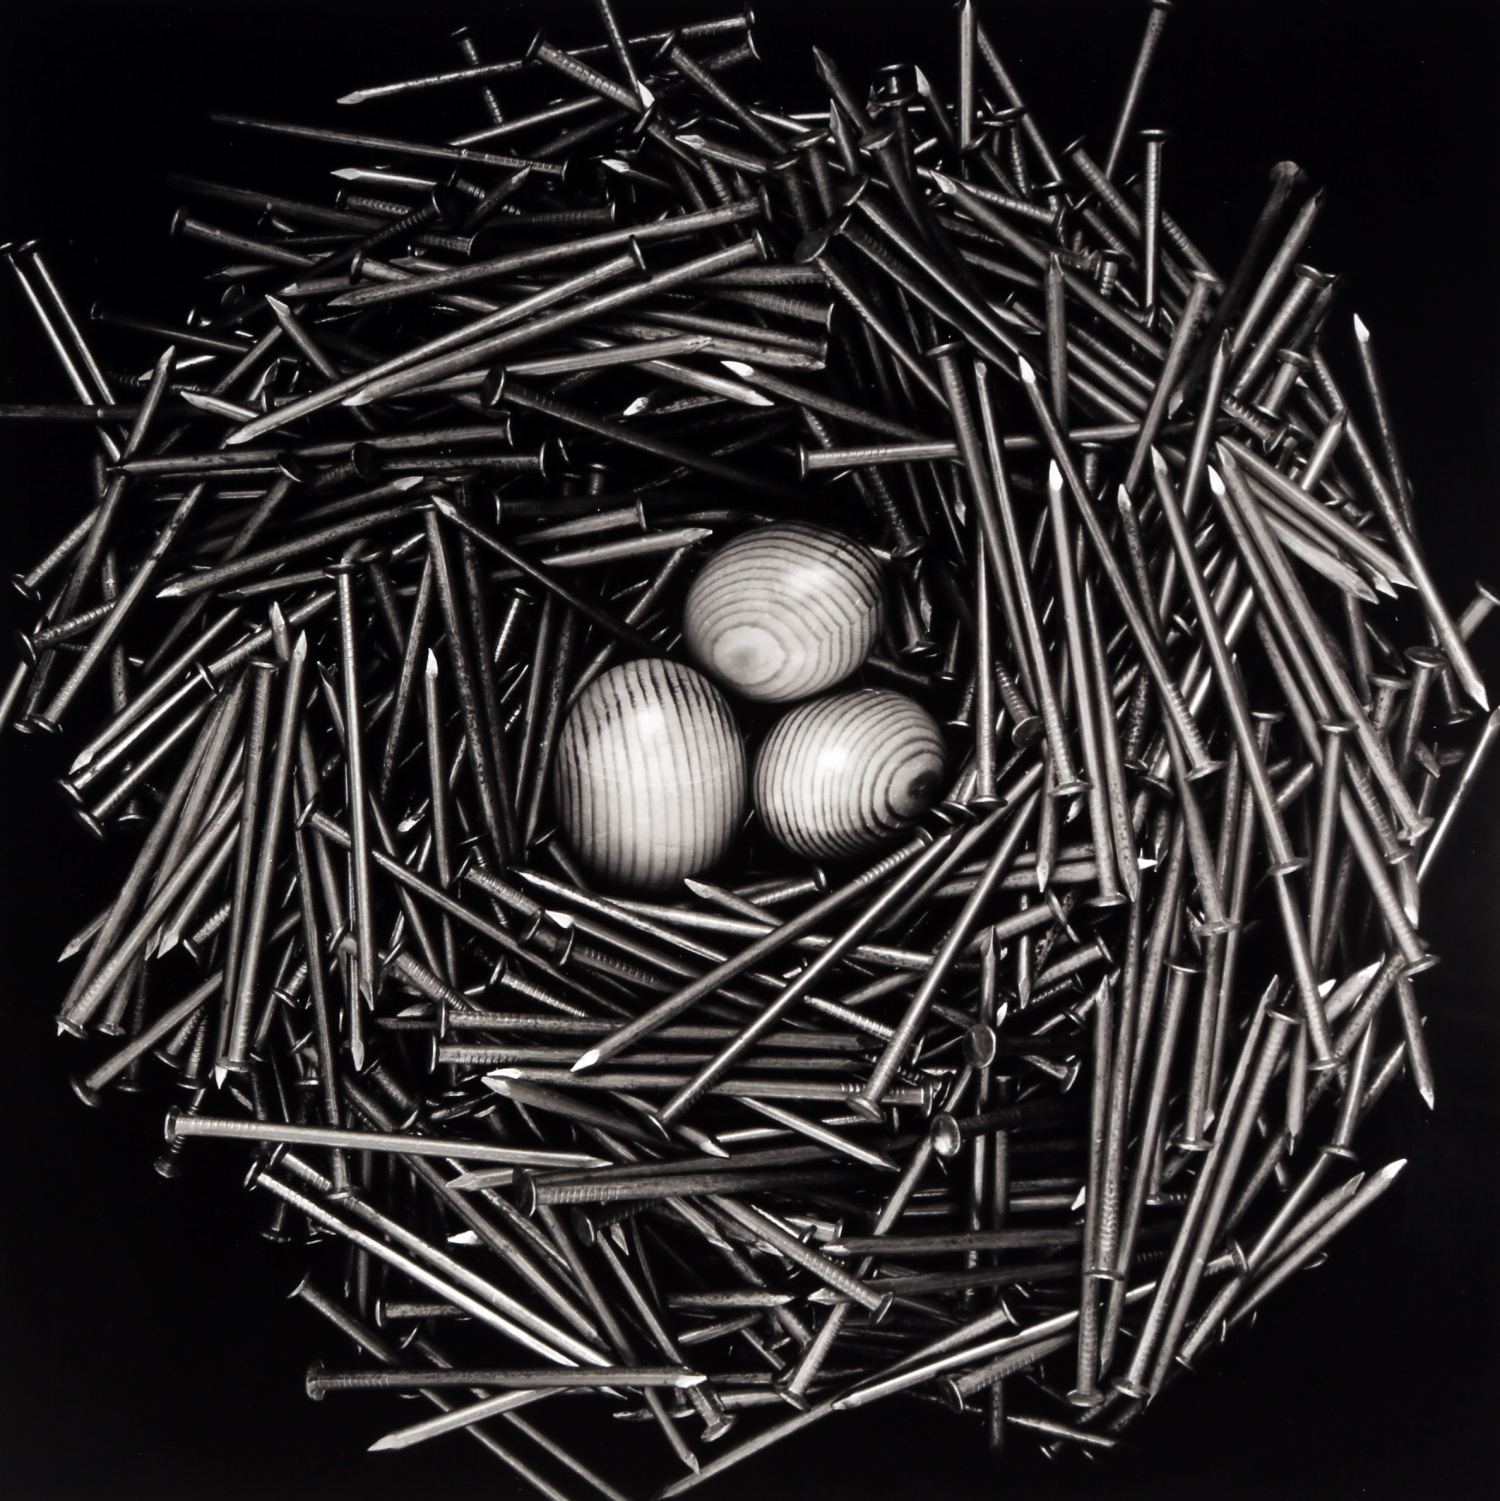 Nest by David Hatfull